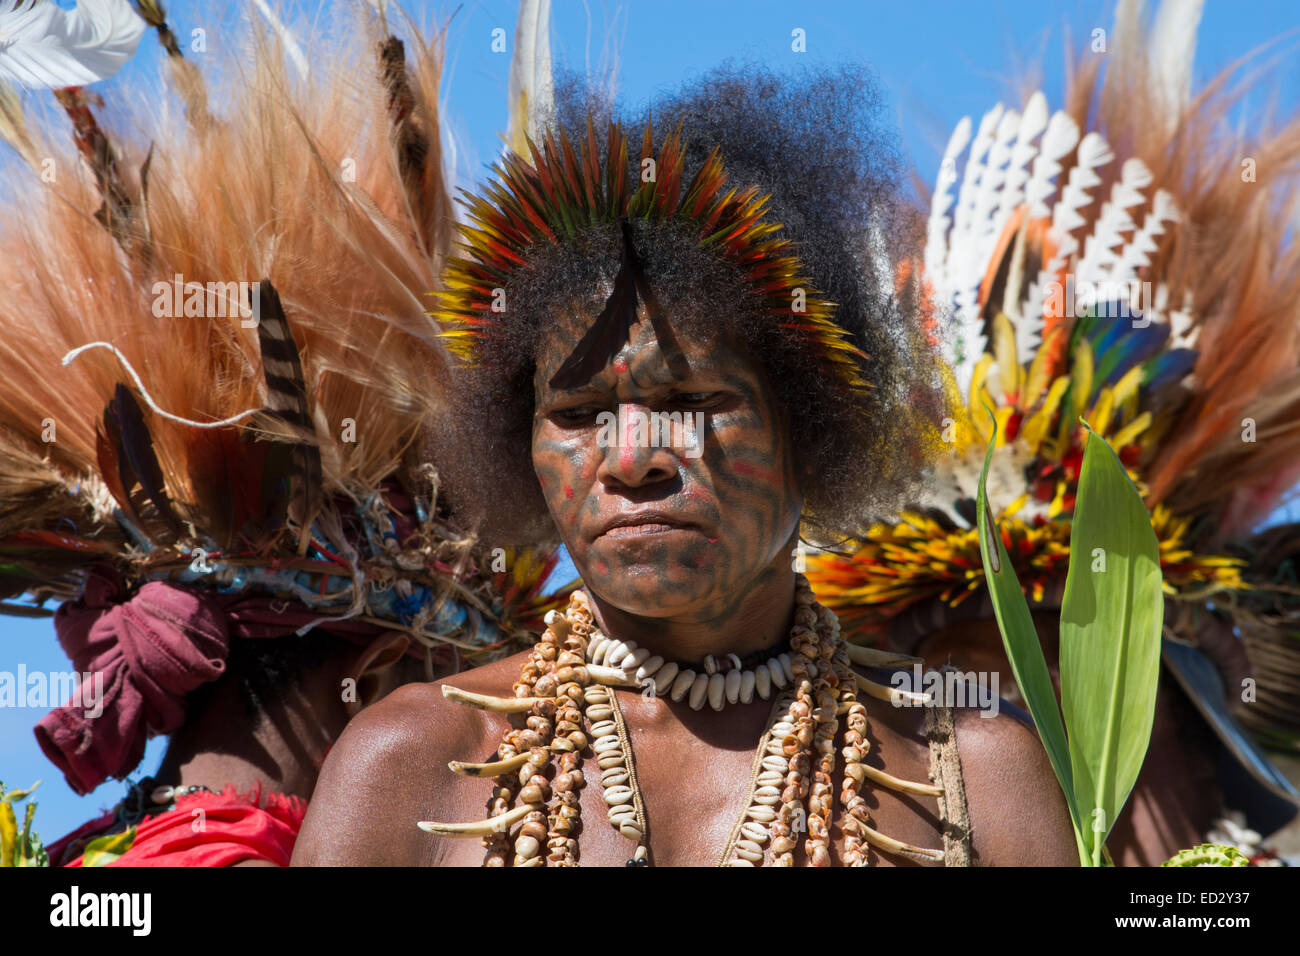 La Papouasie-Nouvelle-Guinée, Tufi. Accueil traditionnel sing-sing performance. Femme vêtue de vêtements autochtones avec leur tatouage. Banque D'Images